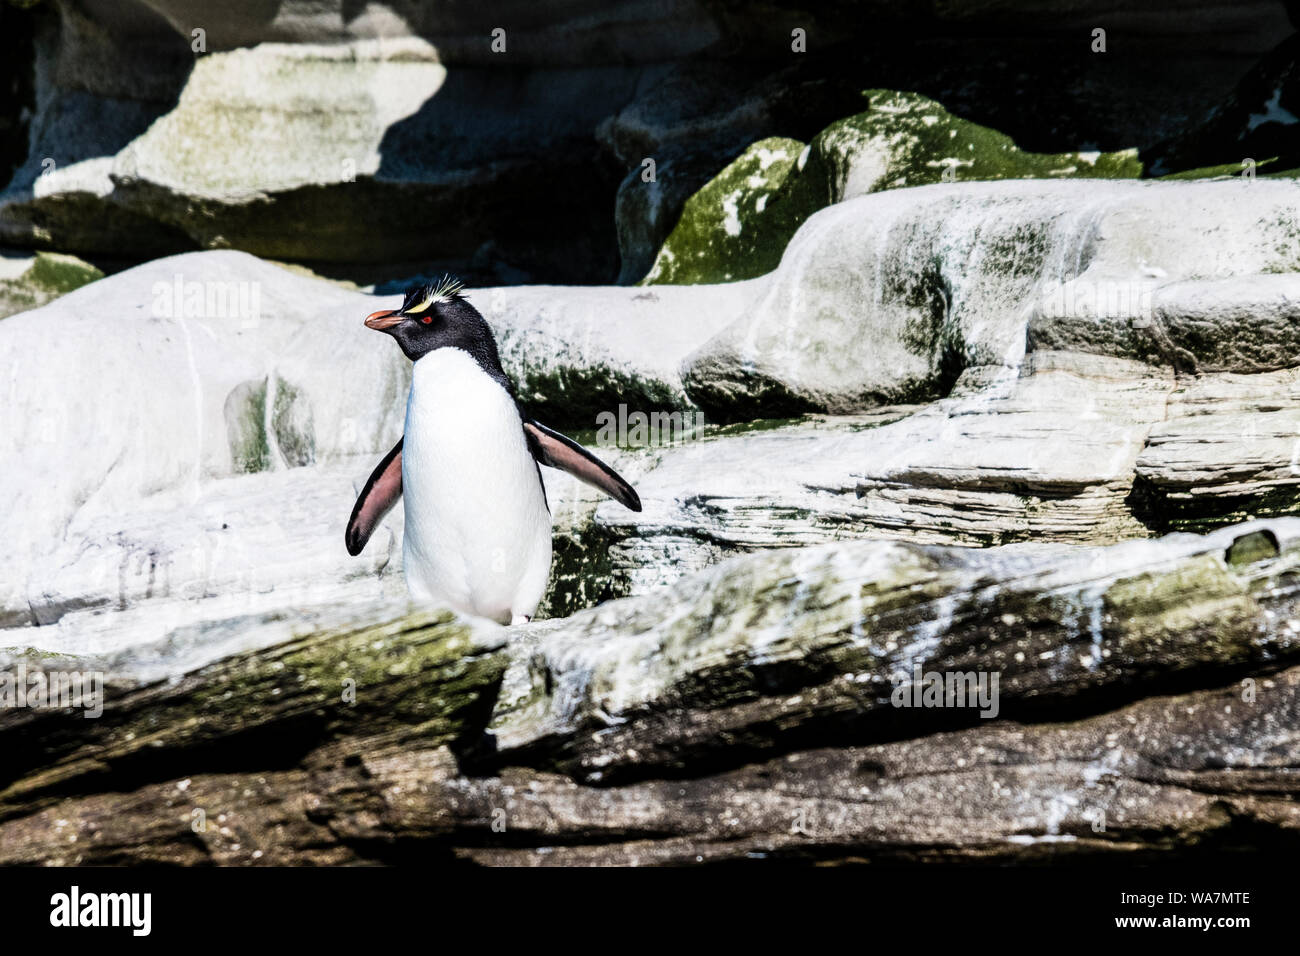 Carino, adulto pinguino saltaroccia, Eudyptes chrysocome, sulle scogliere in corrispondenza del collo, Saunders Island, nelle Isole Falkland, Sud Atlantico Foto Stock